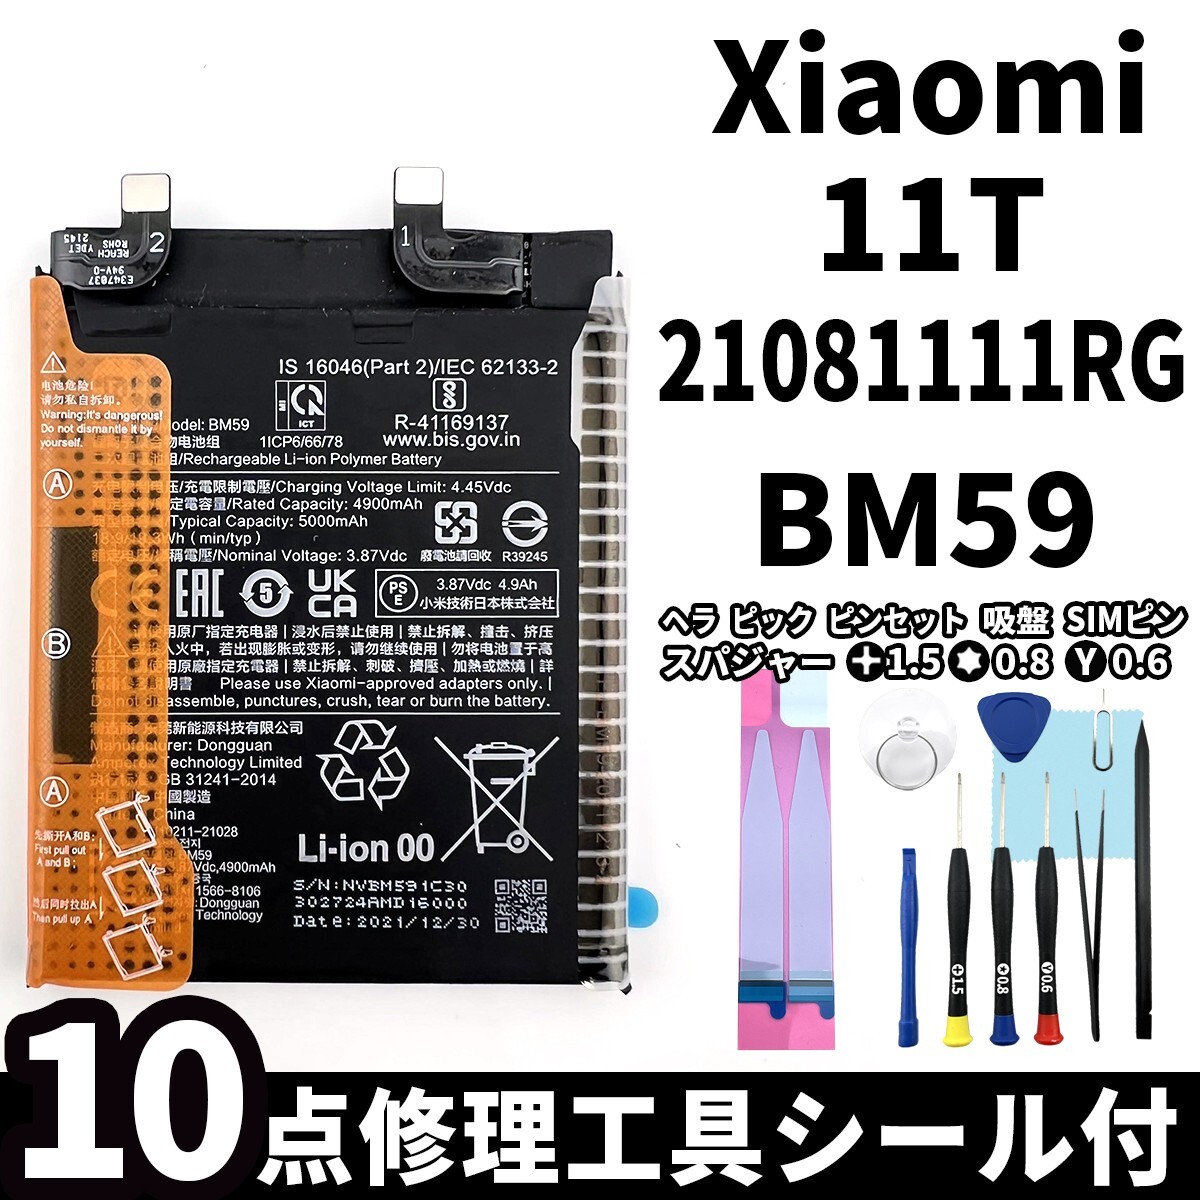 国内即日発送!純正同等新品! Xiaomi 11T バッテリー BM59 21081111RG 電池パック交換 内蔵battery 両面テープ 修理工具付_画像1